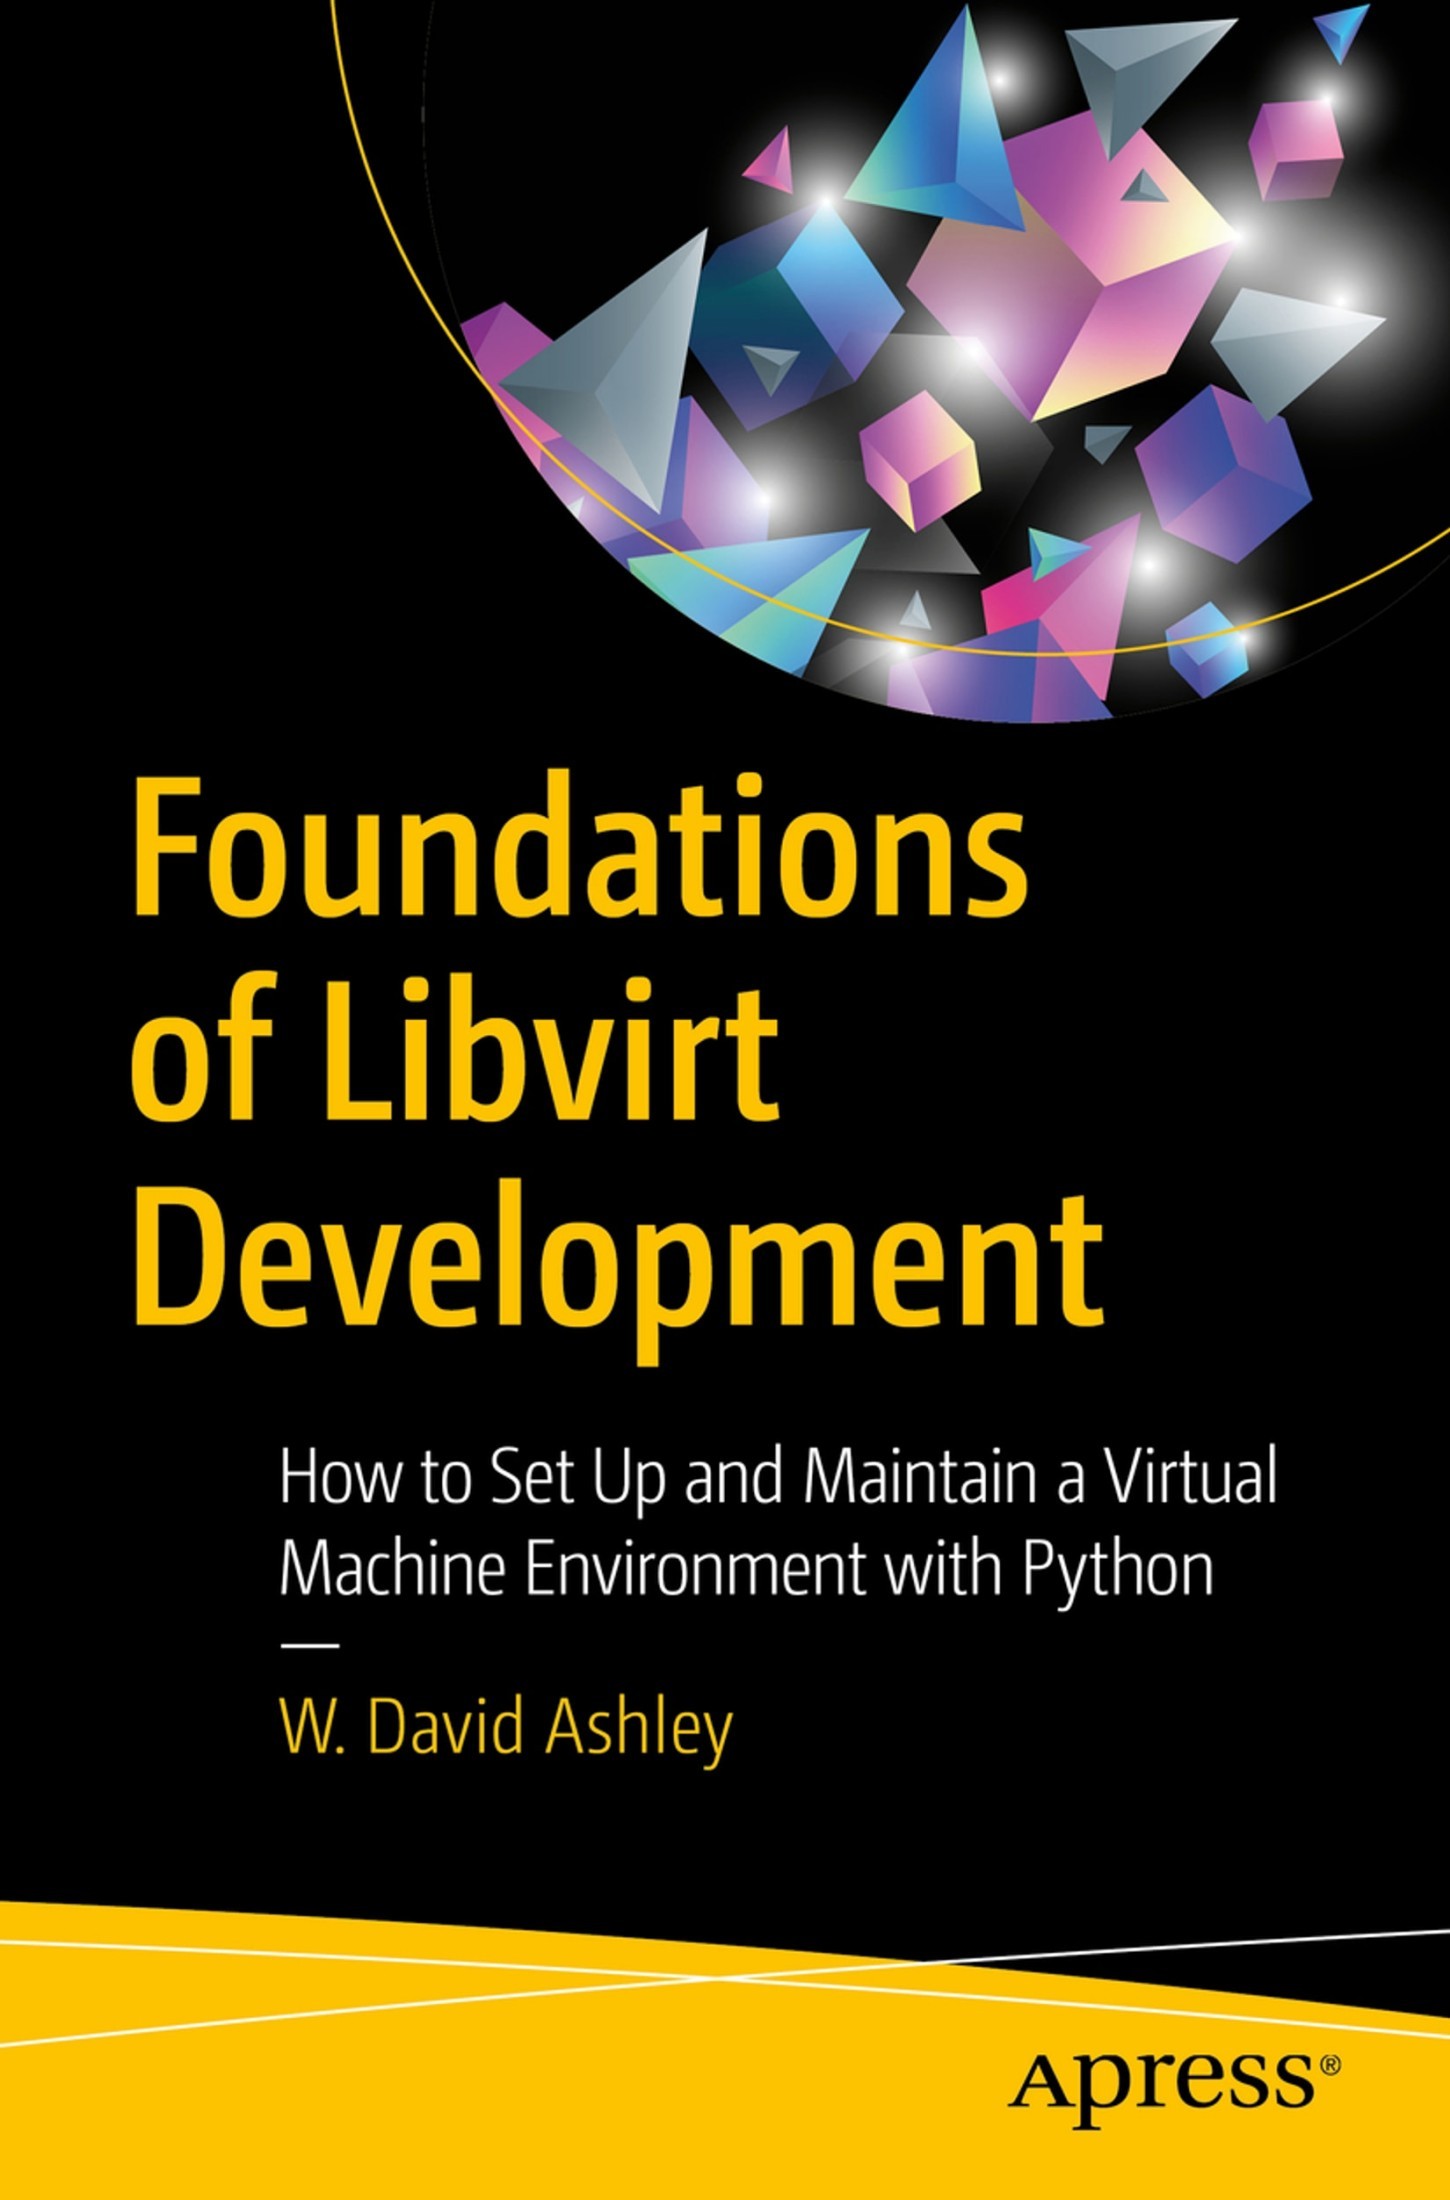 Foundations of Libvirt Development